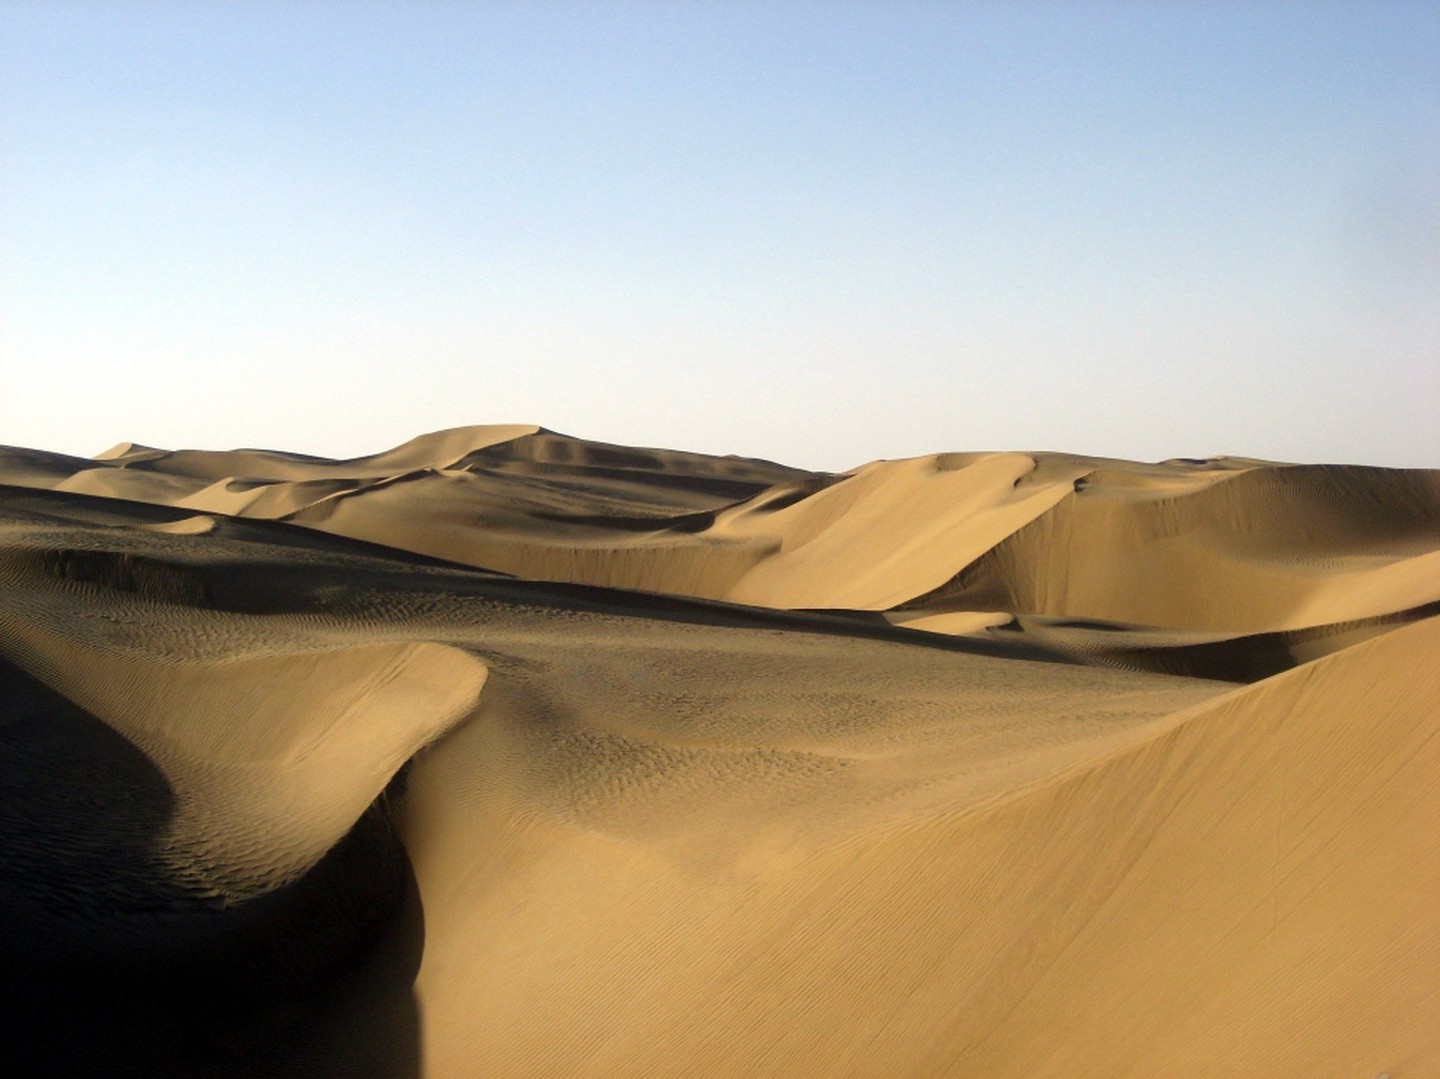 Taklamakan Desert – Central Asia